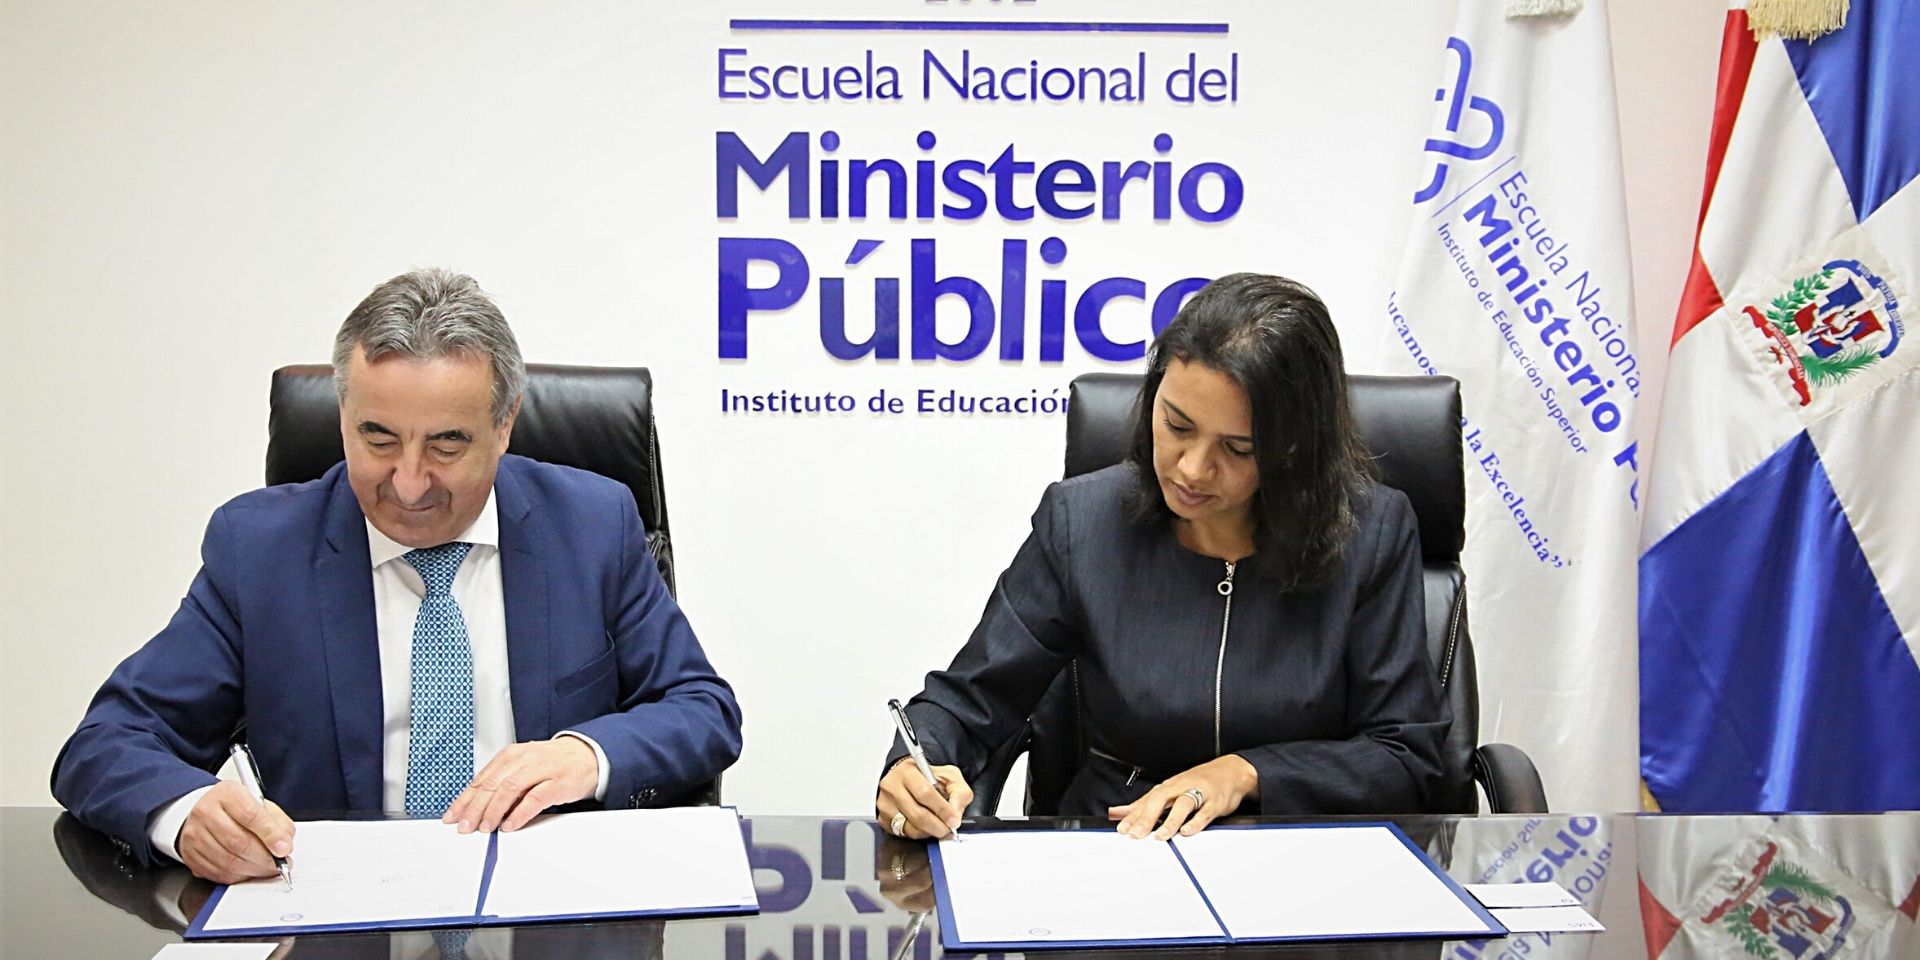 INISEG e IES-ENMP, firman un acuerdo para impartir programas de formación conjuntos en las áreas de Criminalística y Ciberseguridad | Iniseg